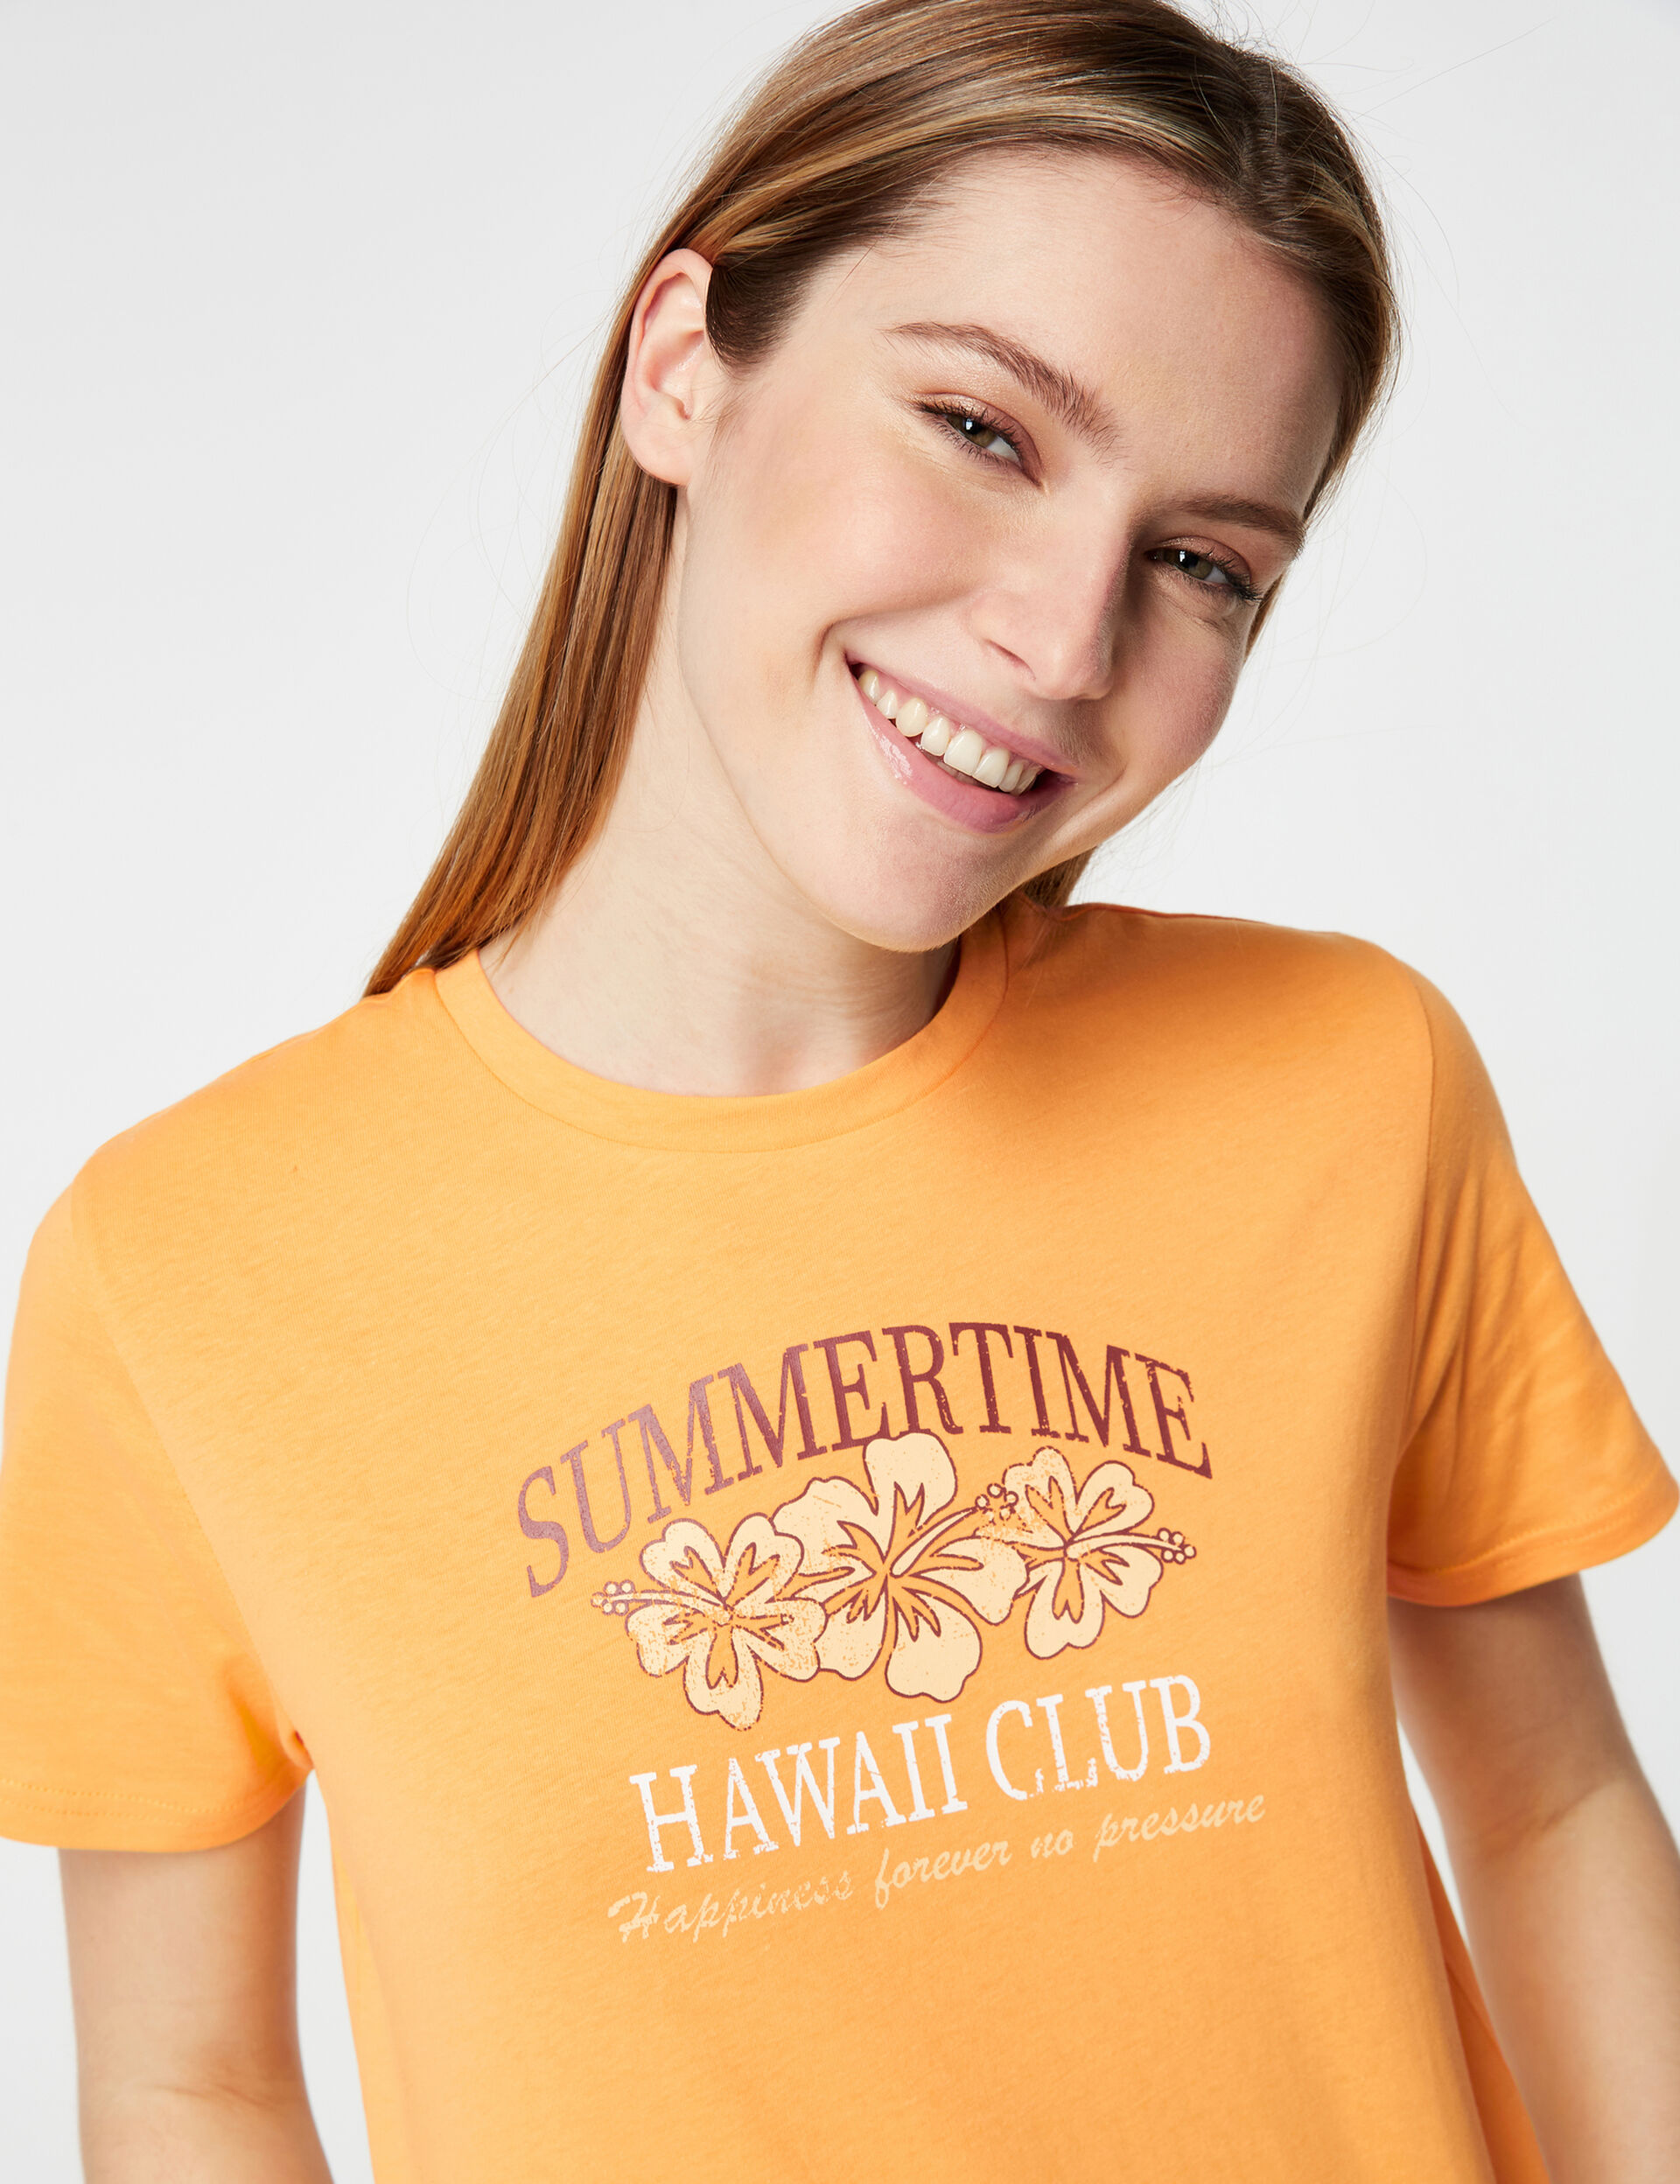 Tee-shirt summertime